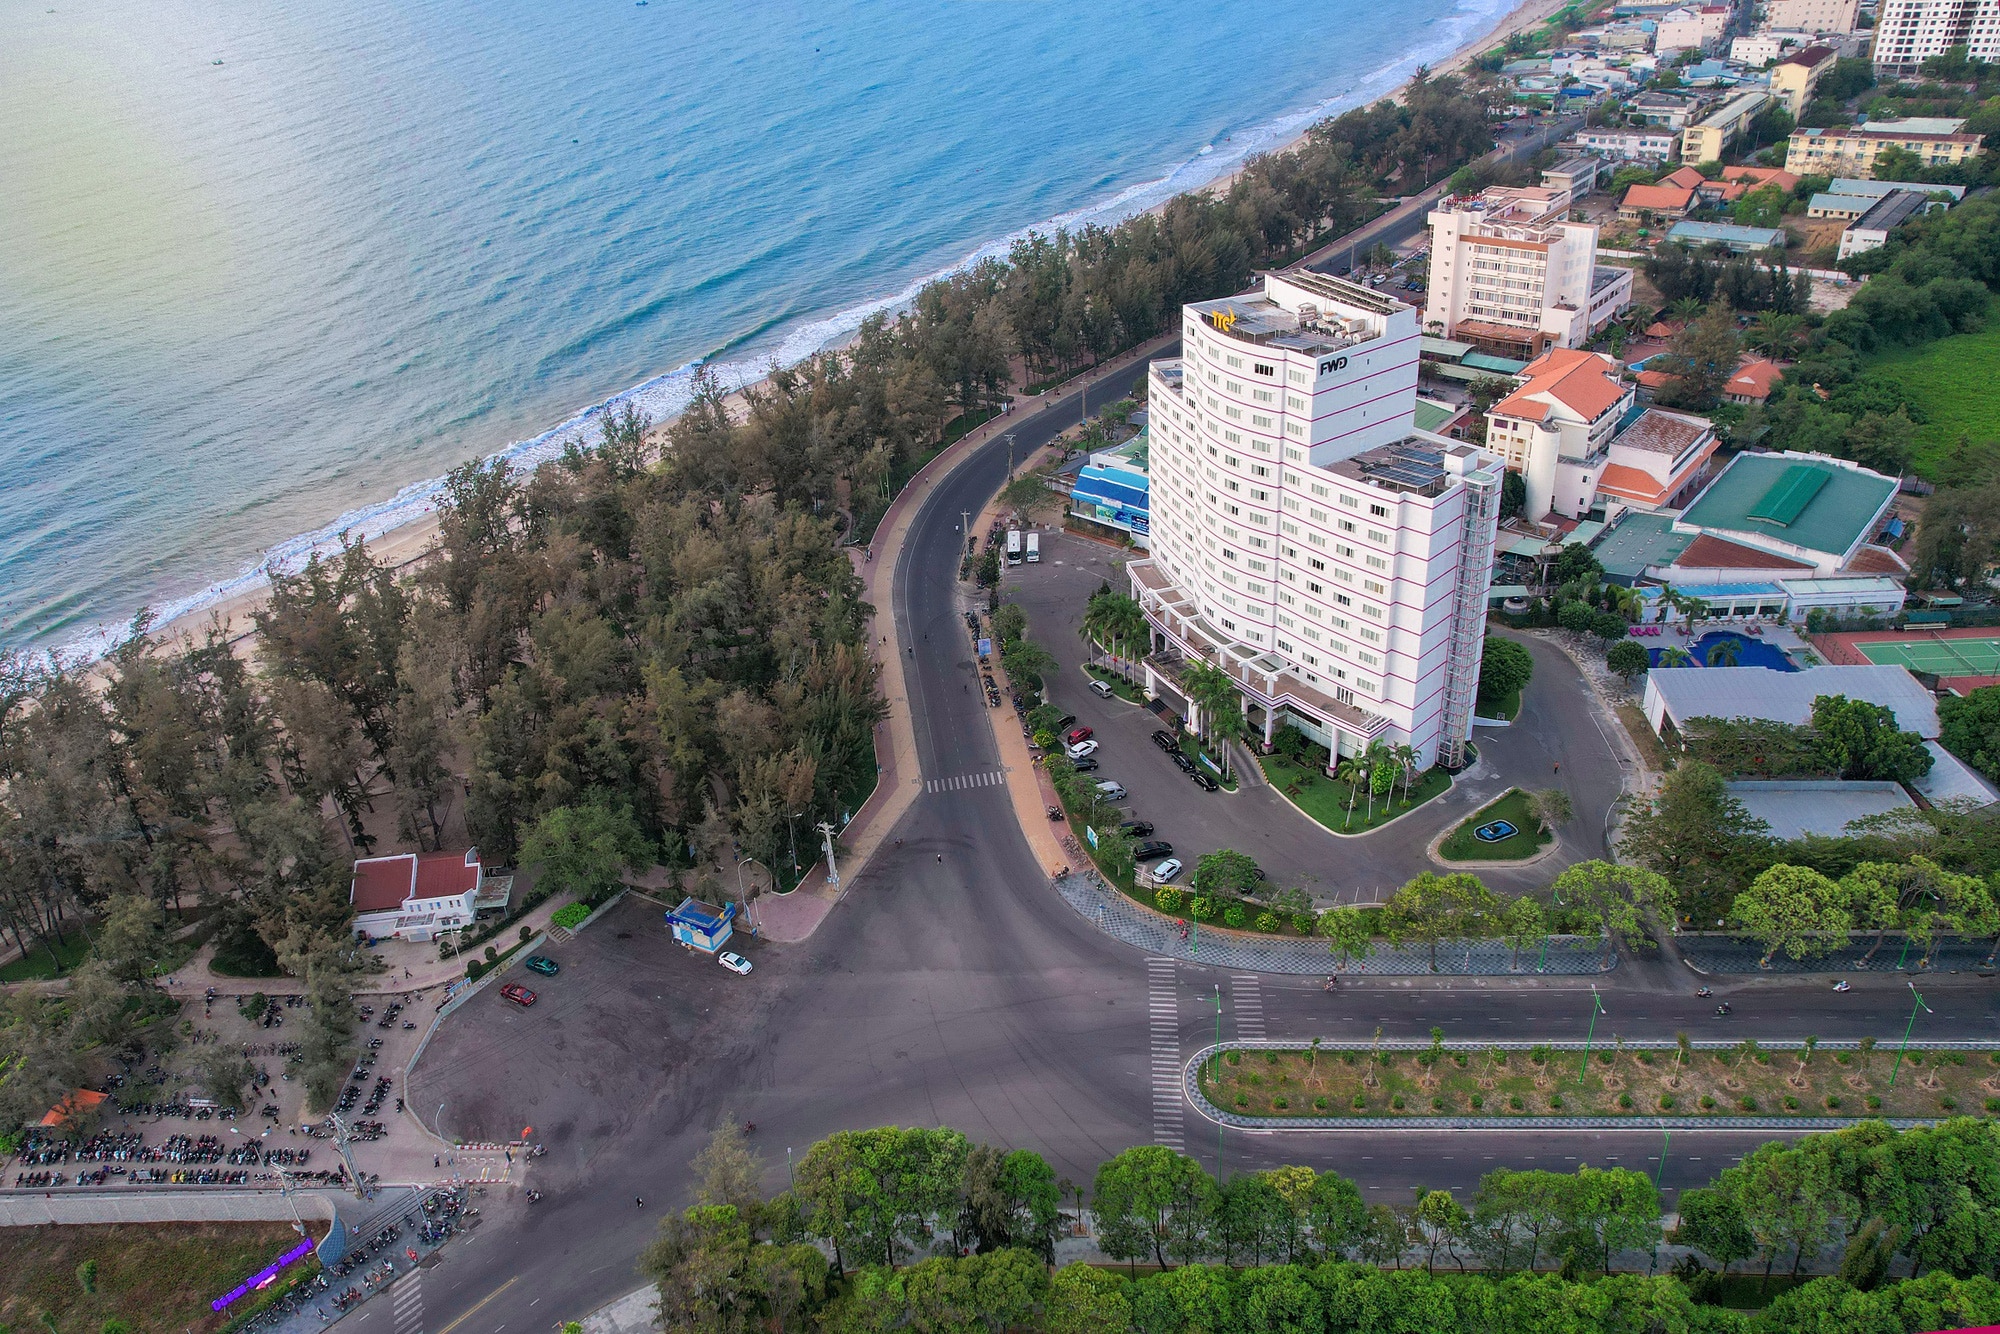 Du khách có thể ngắm bãi biển Đồi Dương từ TTC Hotel - Phan Thiết. Ảnh: Đ.H